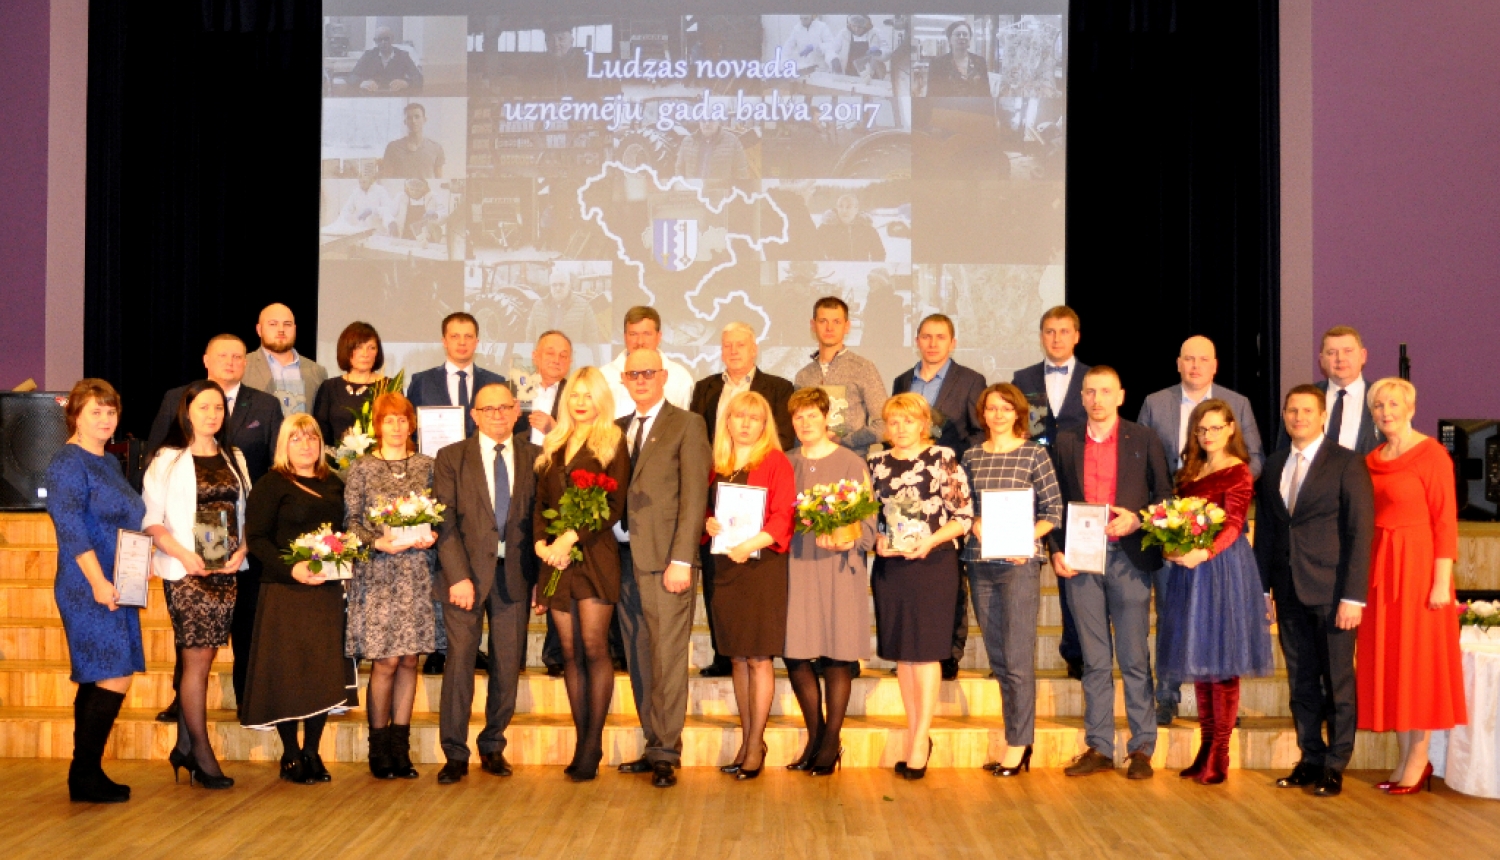 Godināti konkursa “Ludzas novada uzņēmēju gada balva 2017” uzvarētāji (papildināts)